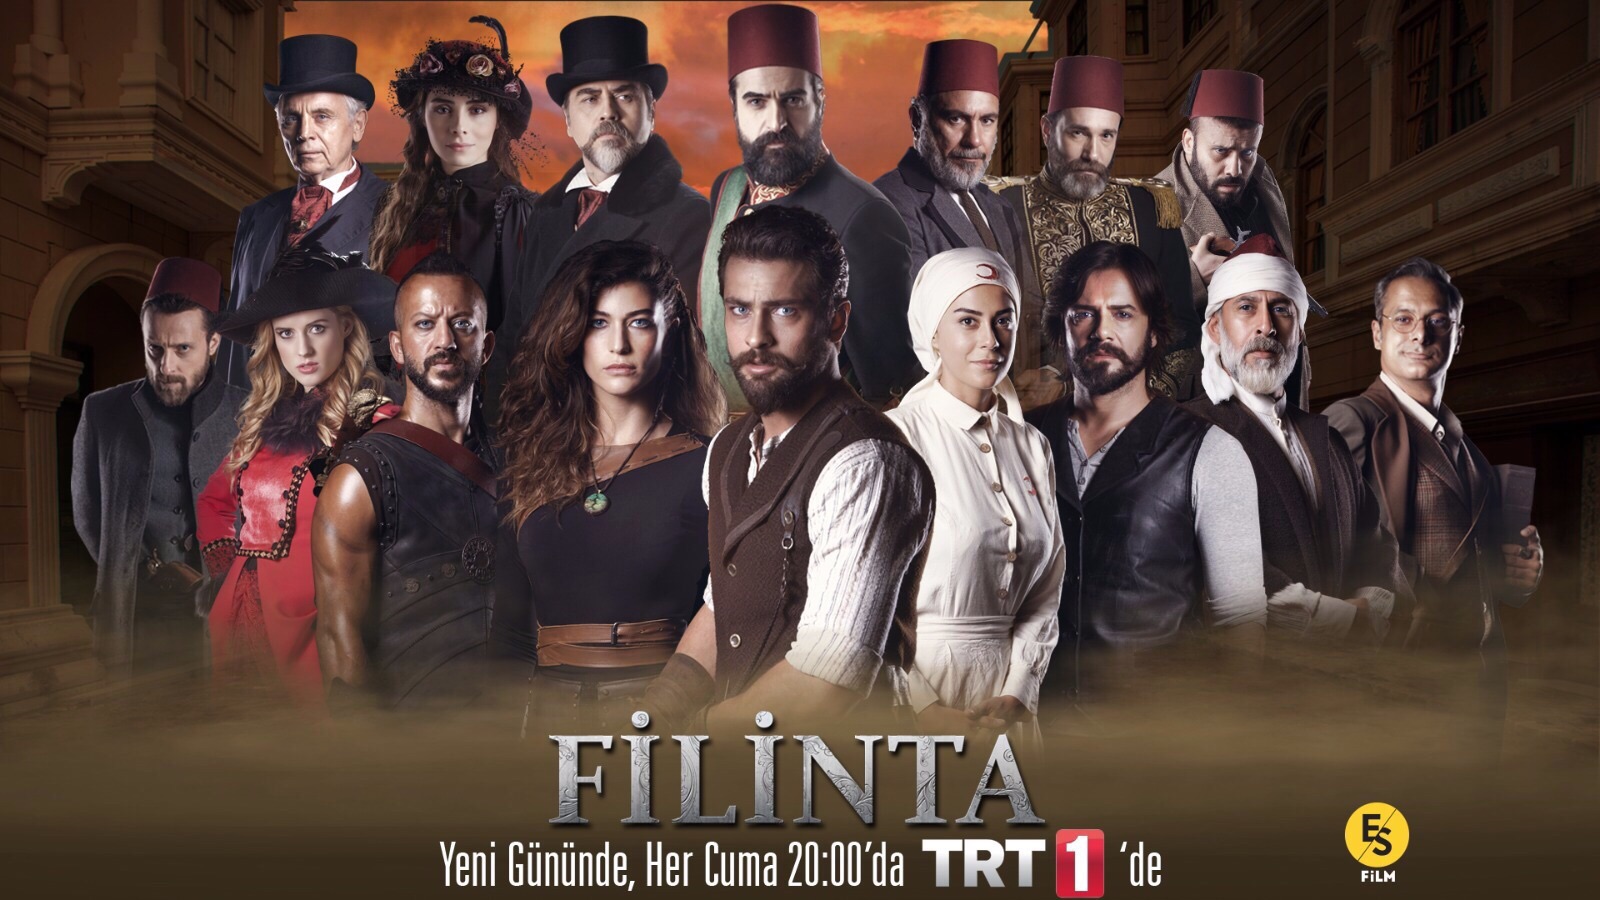 Filinta TV Series